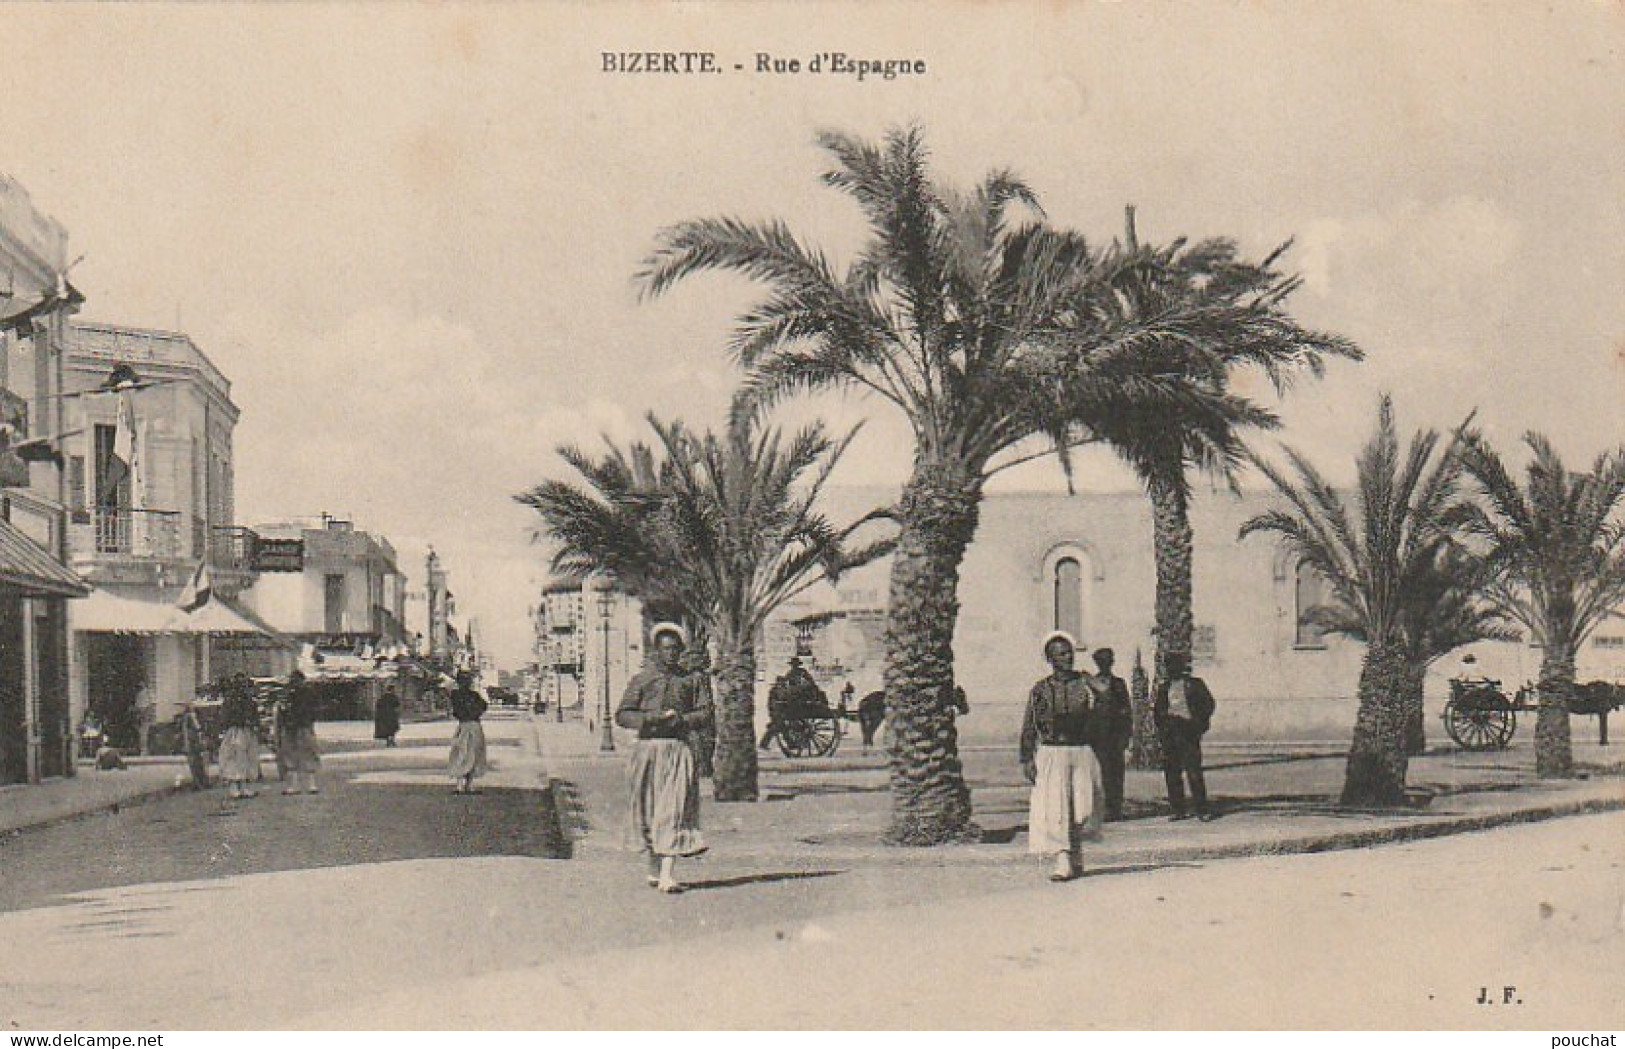 ZY 103- BIZERTE ( TUNISIE ) - RUE D' ESPAGNE - ANIMATION - 2 SCANS - Tunisie